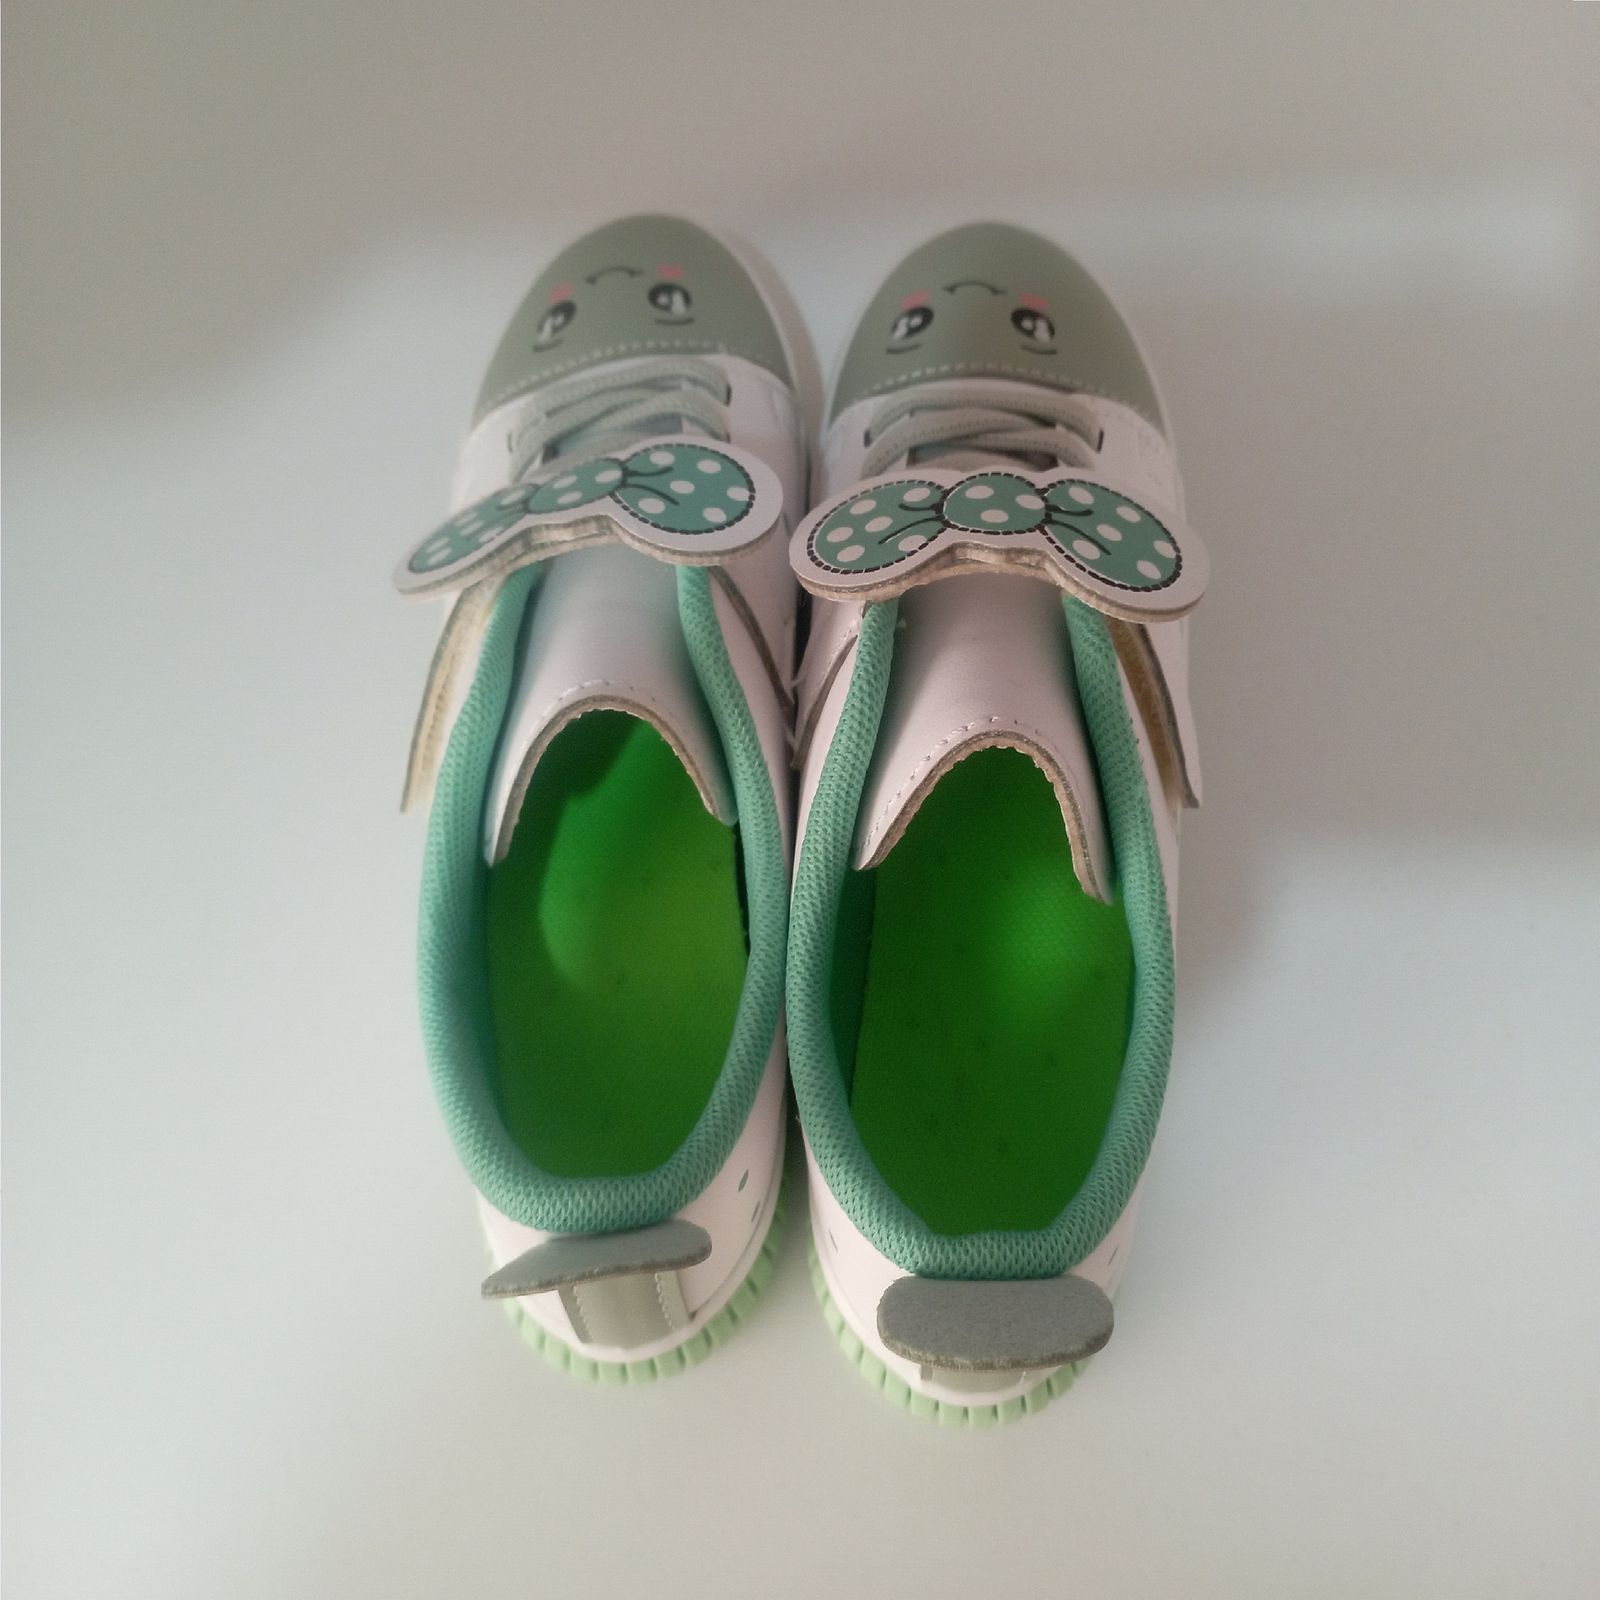  کفش راحتی بچگانه مدل پاپیونی کد 09 رنگ سبز  -  - 3